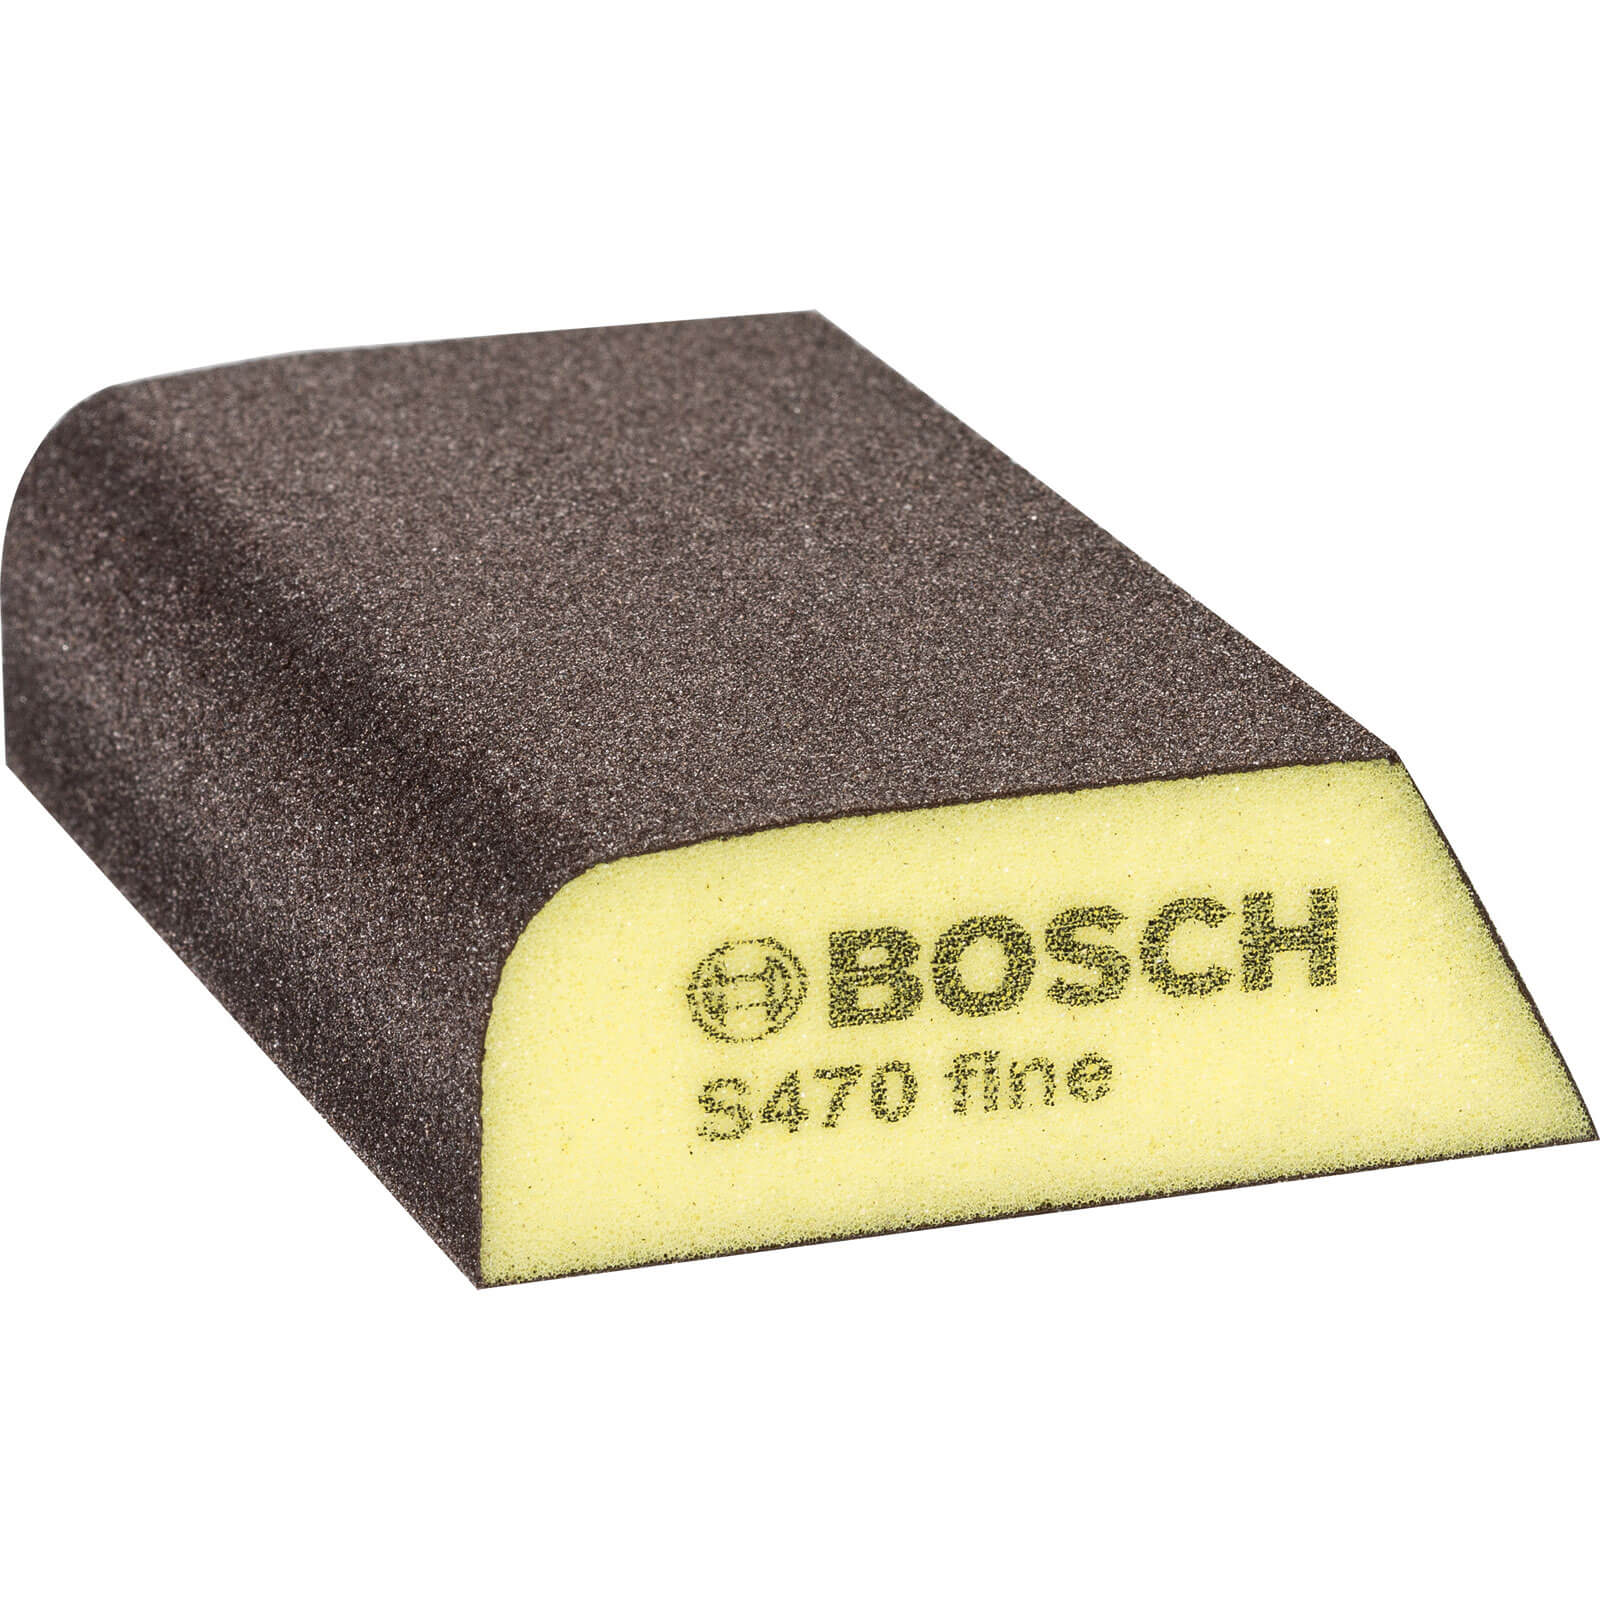 Image of Bosch Hand Sanding Combi Sponge Fine